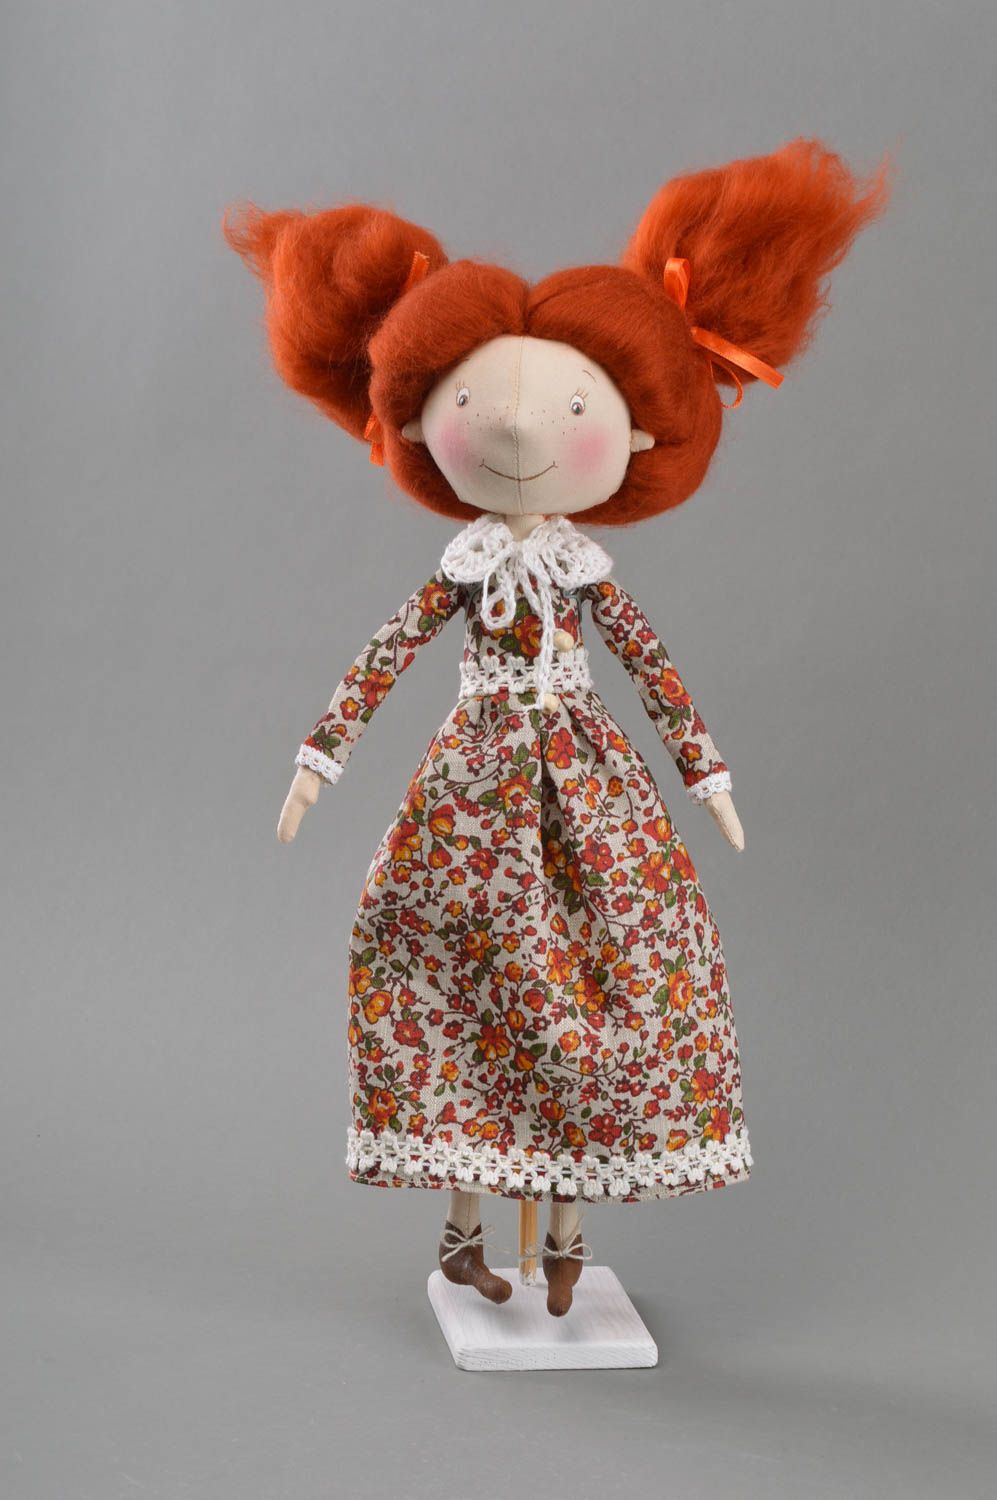 Авторская интерьерная кукла ручной работы из ткани на подставке Рыженькая   фото 1